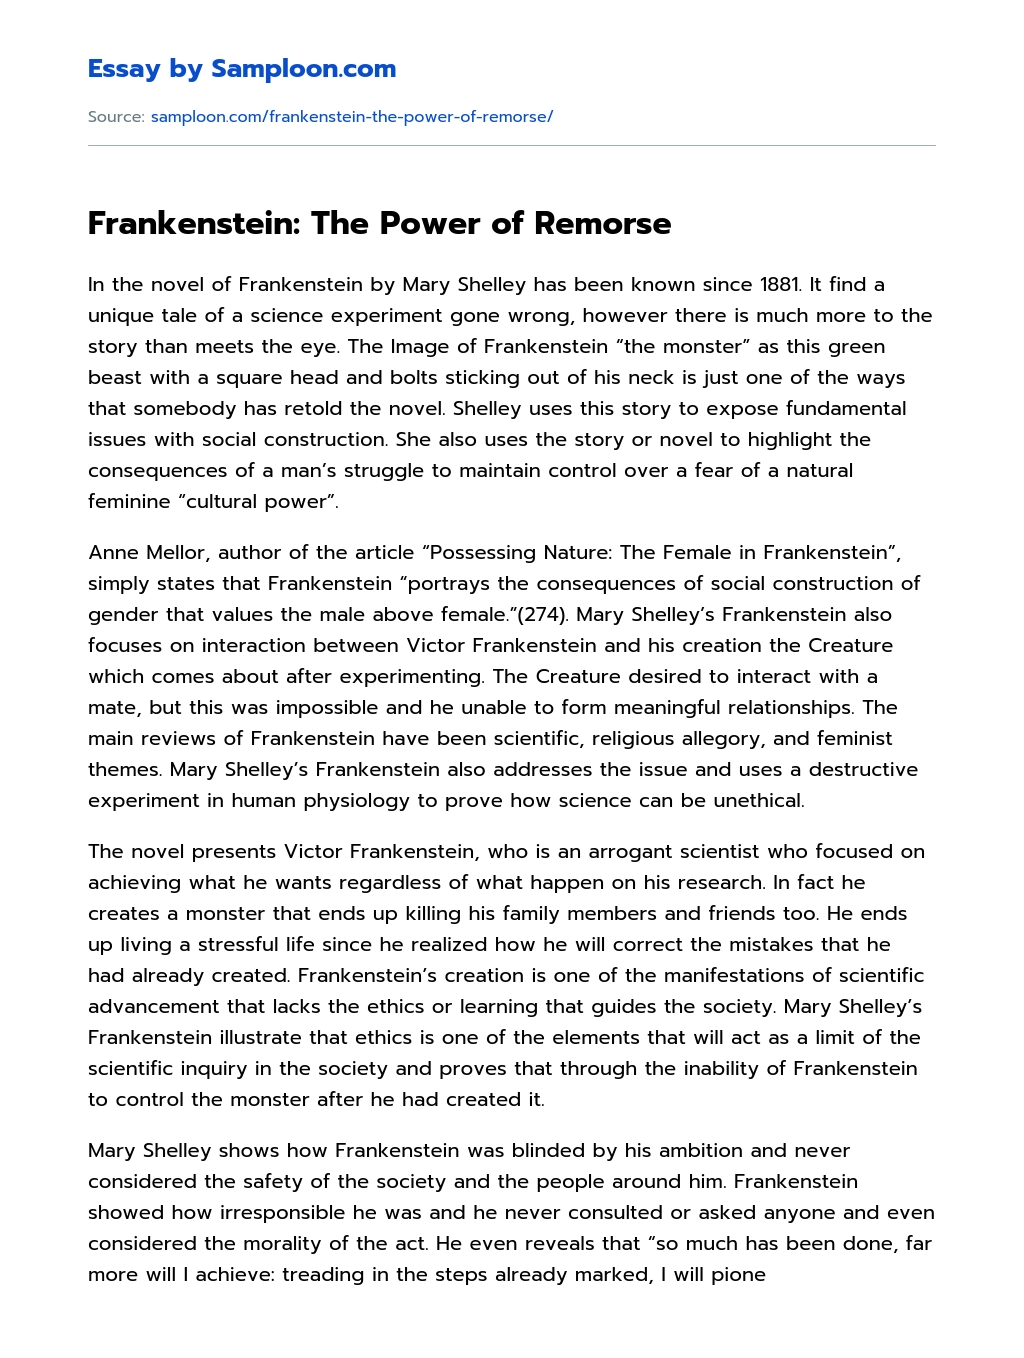 Frankenstein: The Power of Remorse Analytical Essay essay